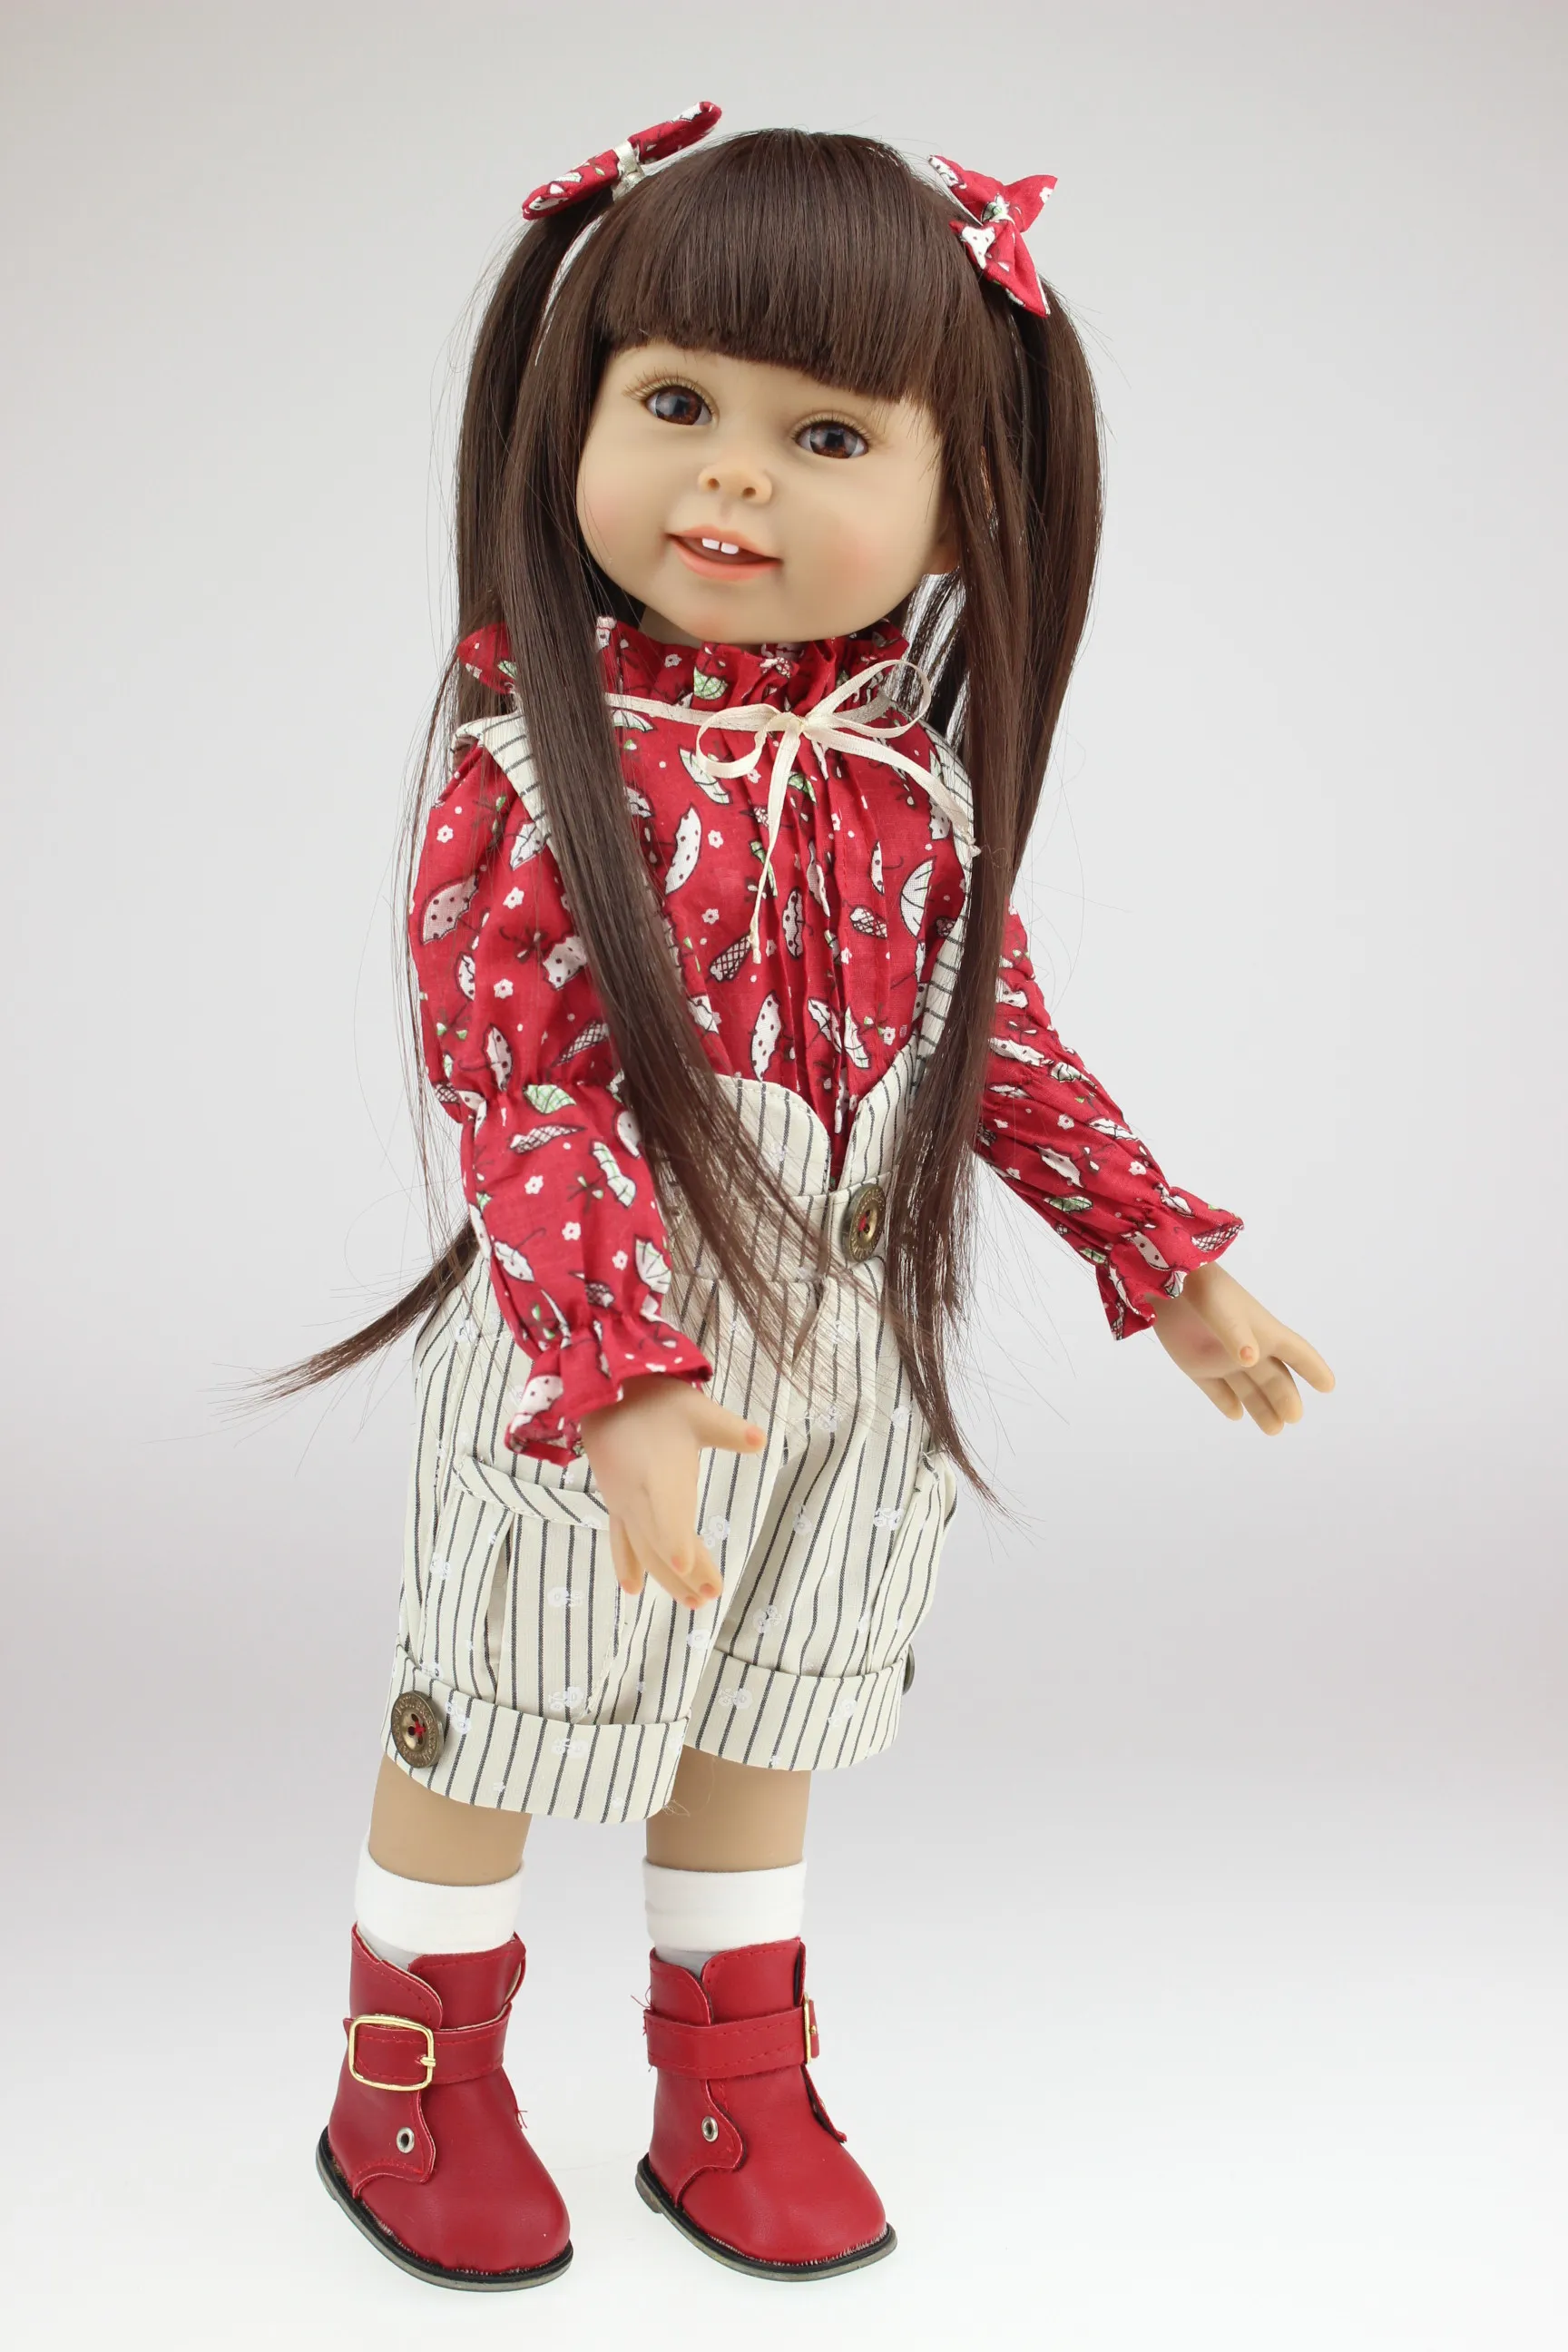 18 tums docka realistisk amerikansk tjej full vinyl återfödd dockor som jul födelsedag gåvor